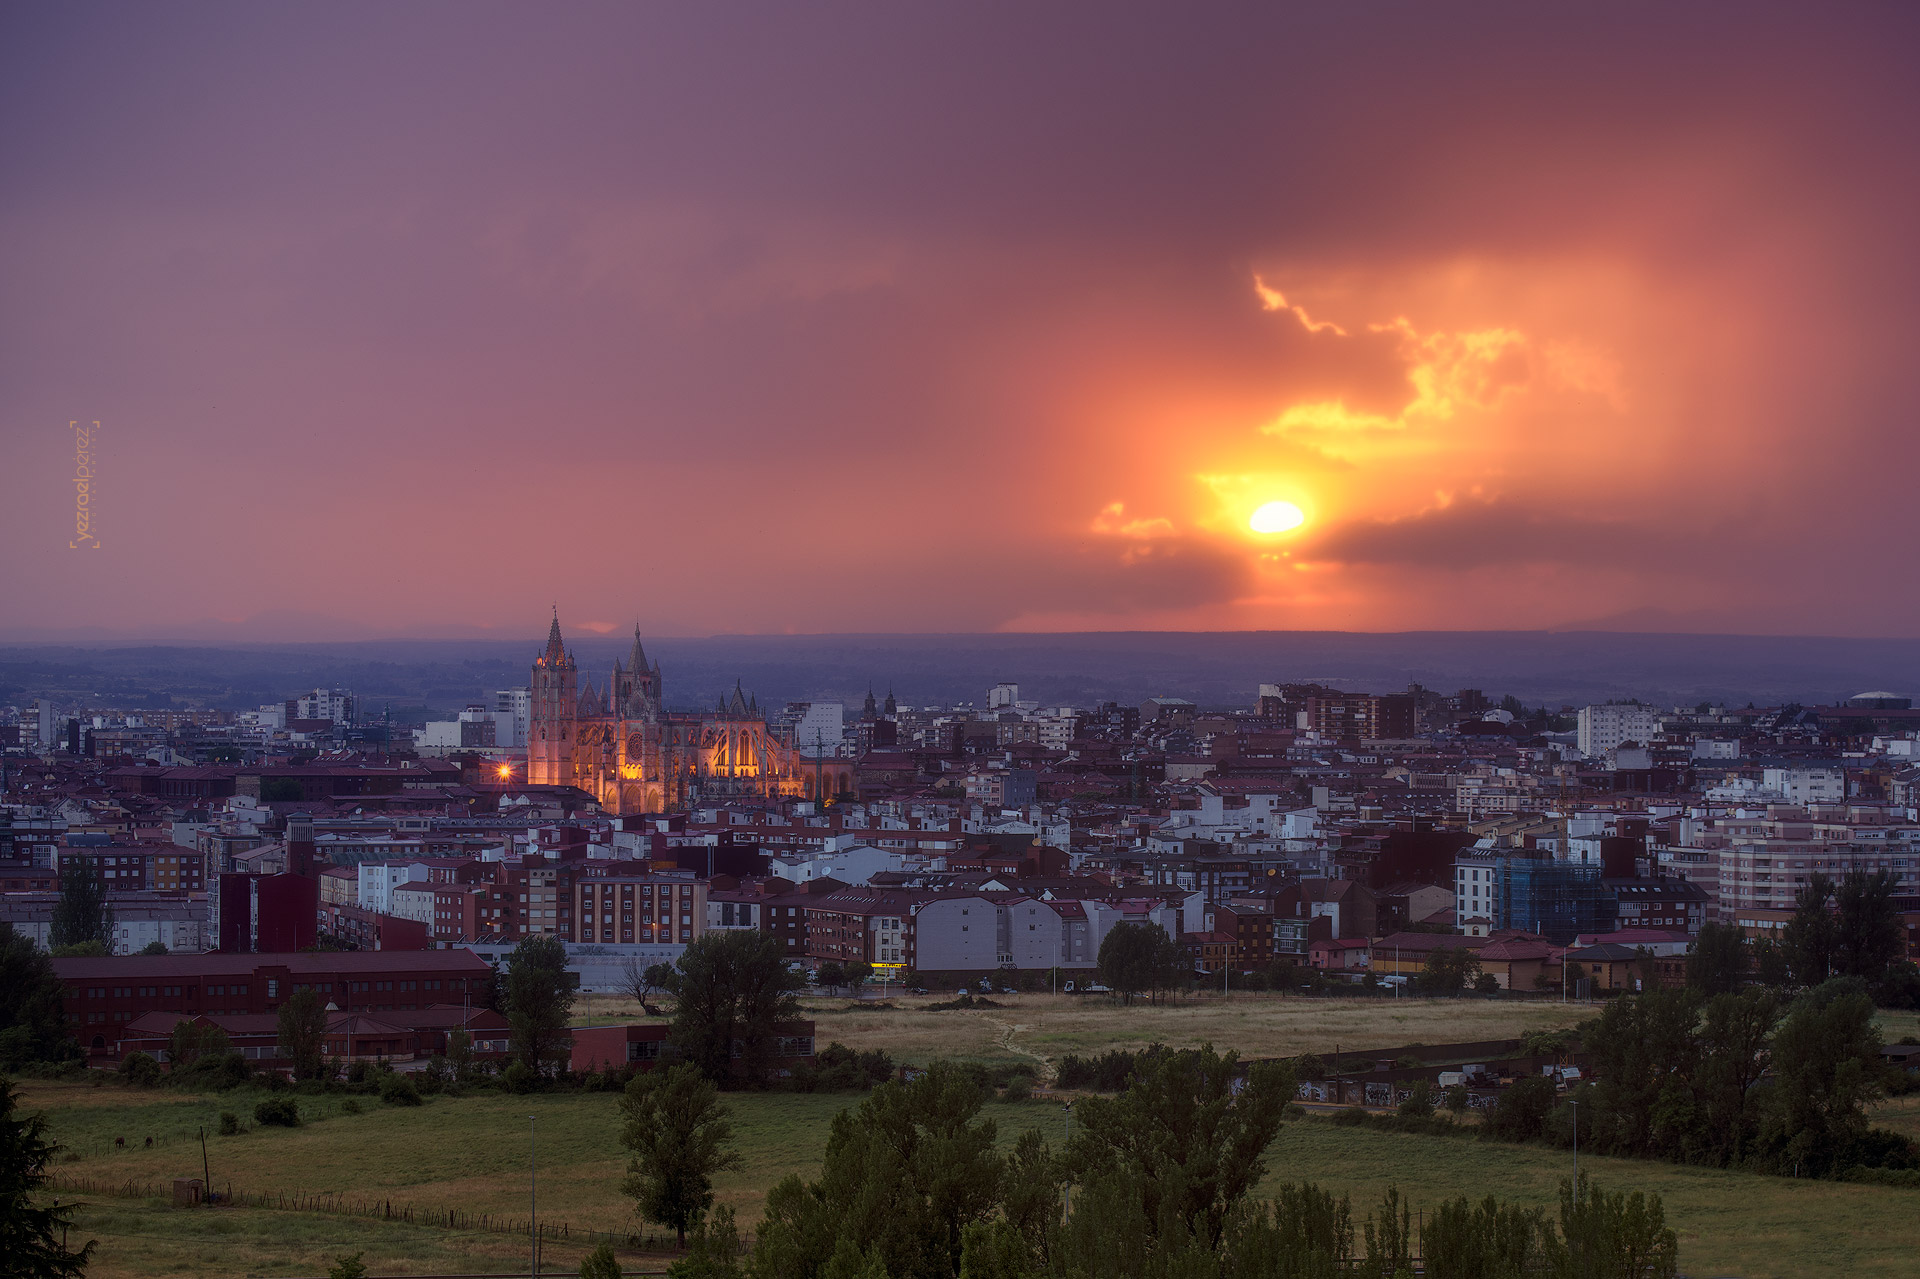 La ciudad de León frente a un tormentoso atardecer en el horizonte